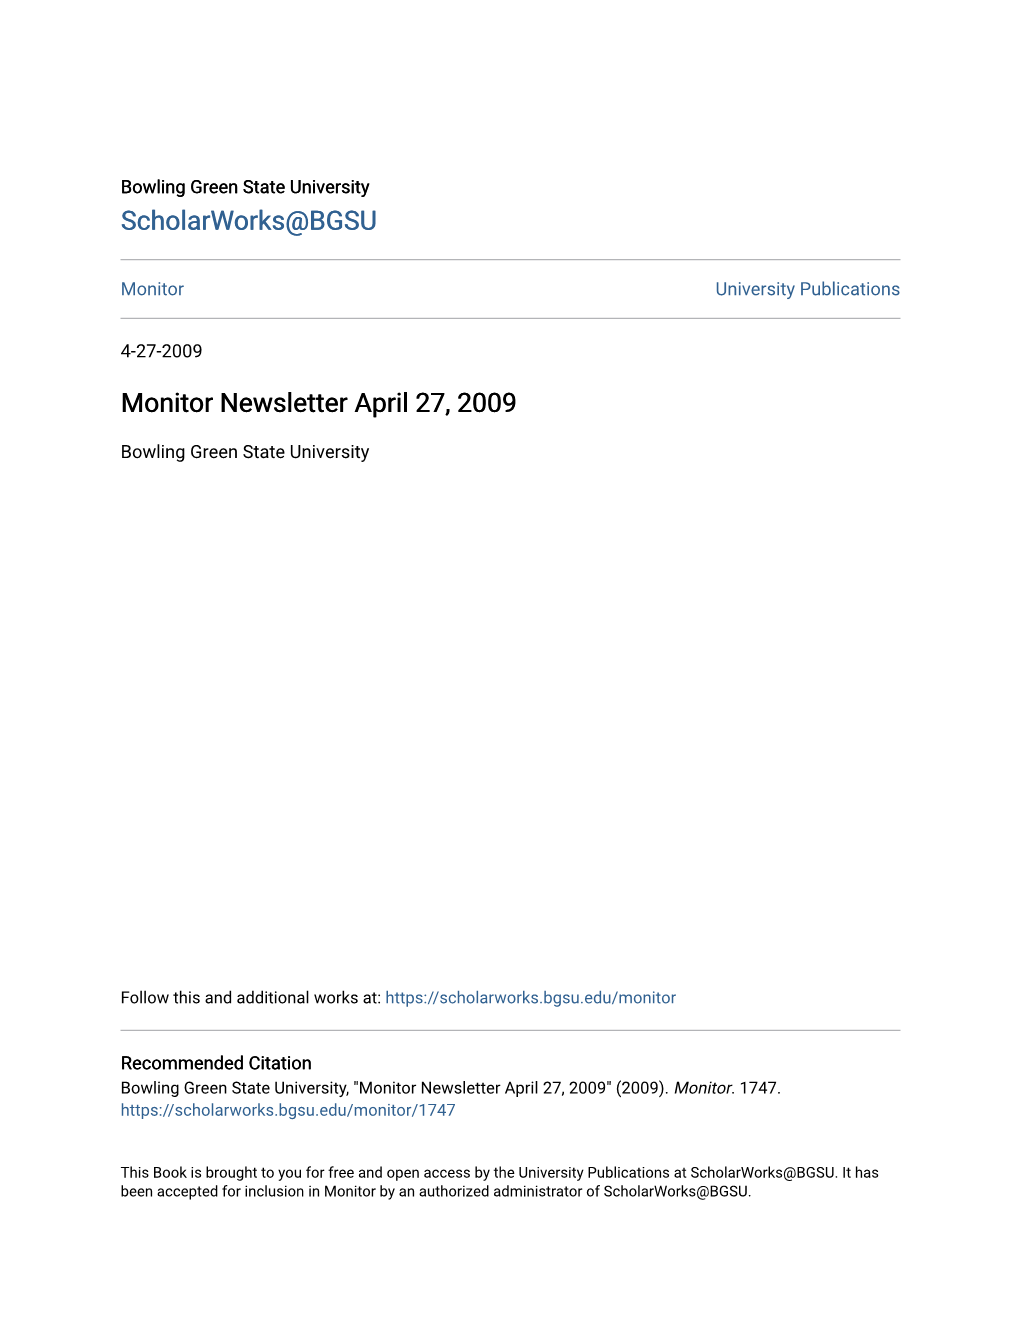 Monitor Newsletter April 27, 2009